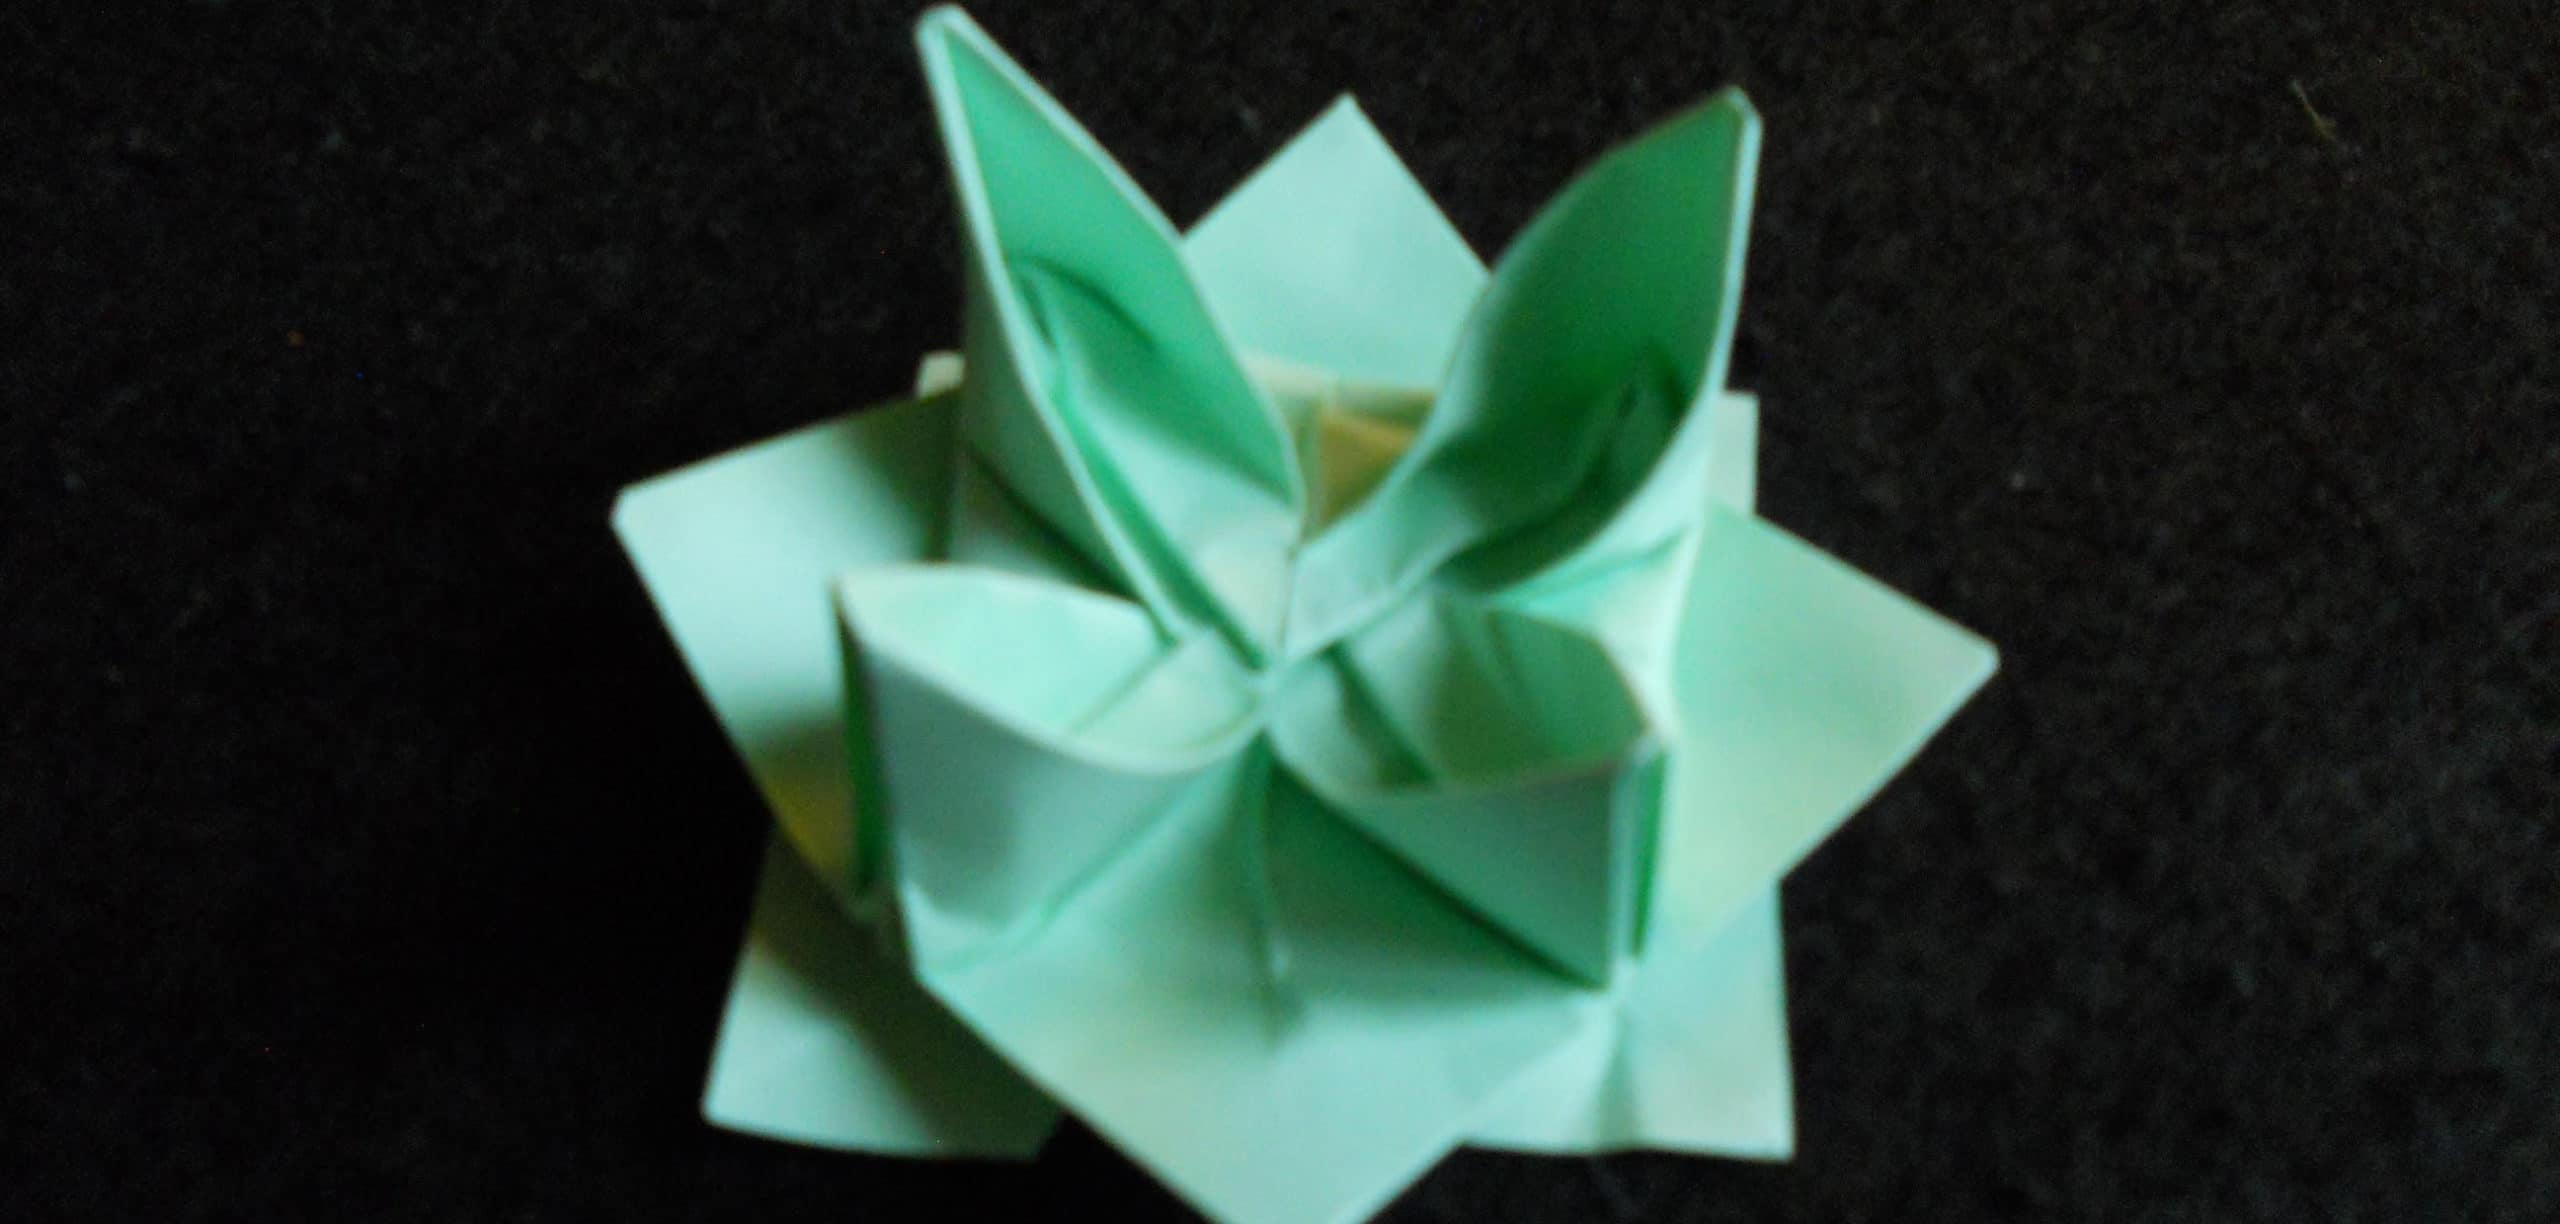 flor de loto de papel